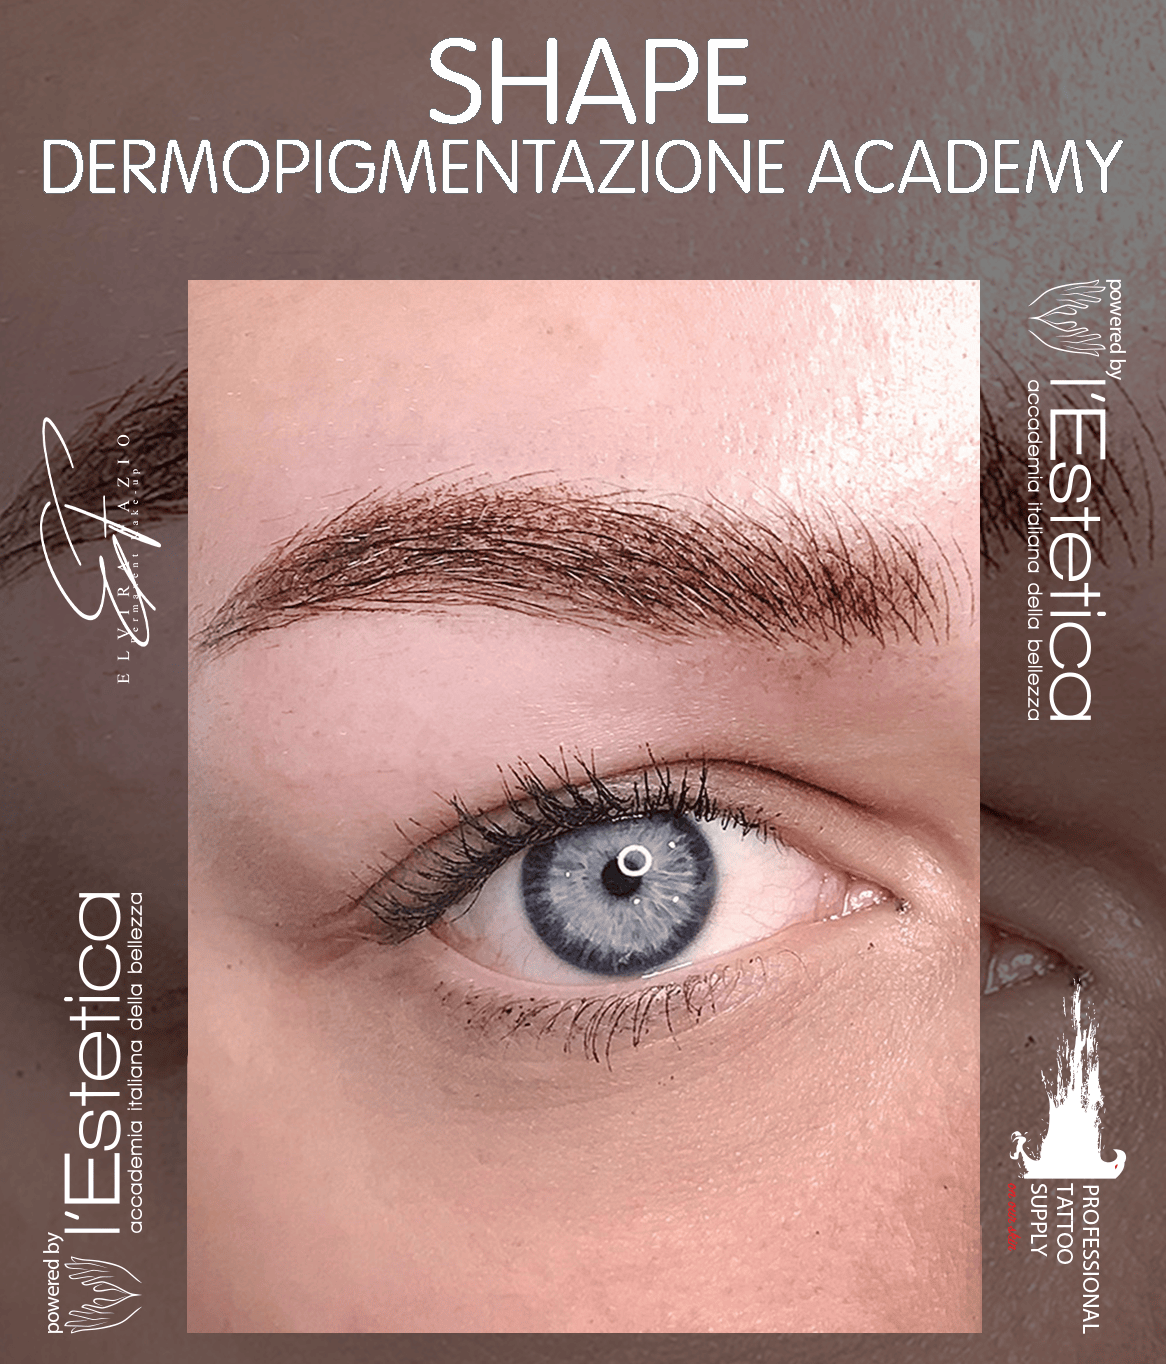 Shape accademia dermopigmentazione.jpg